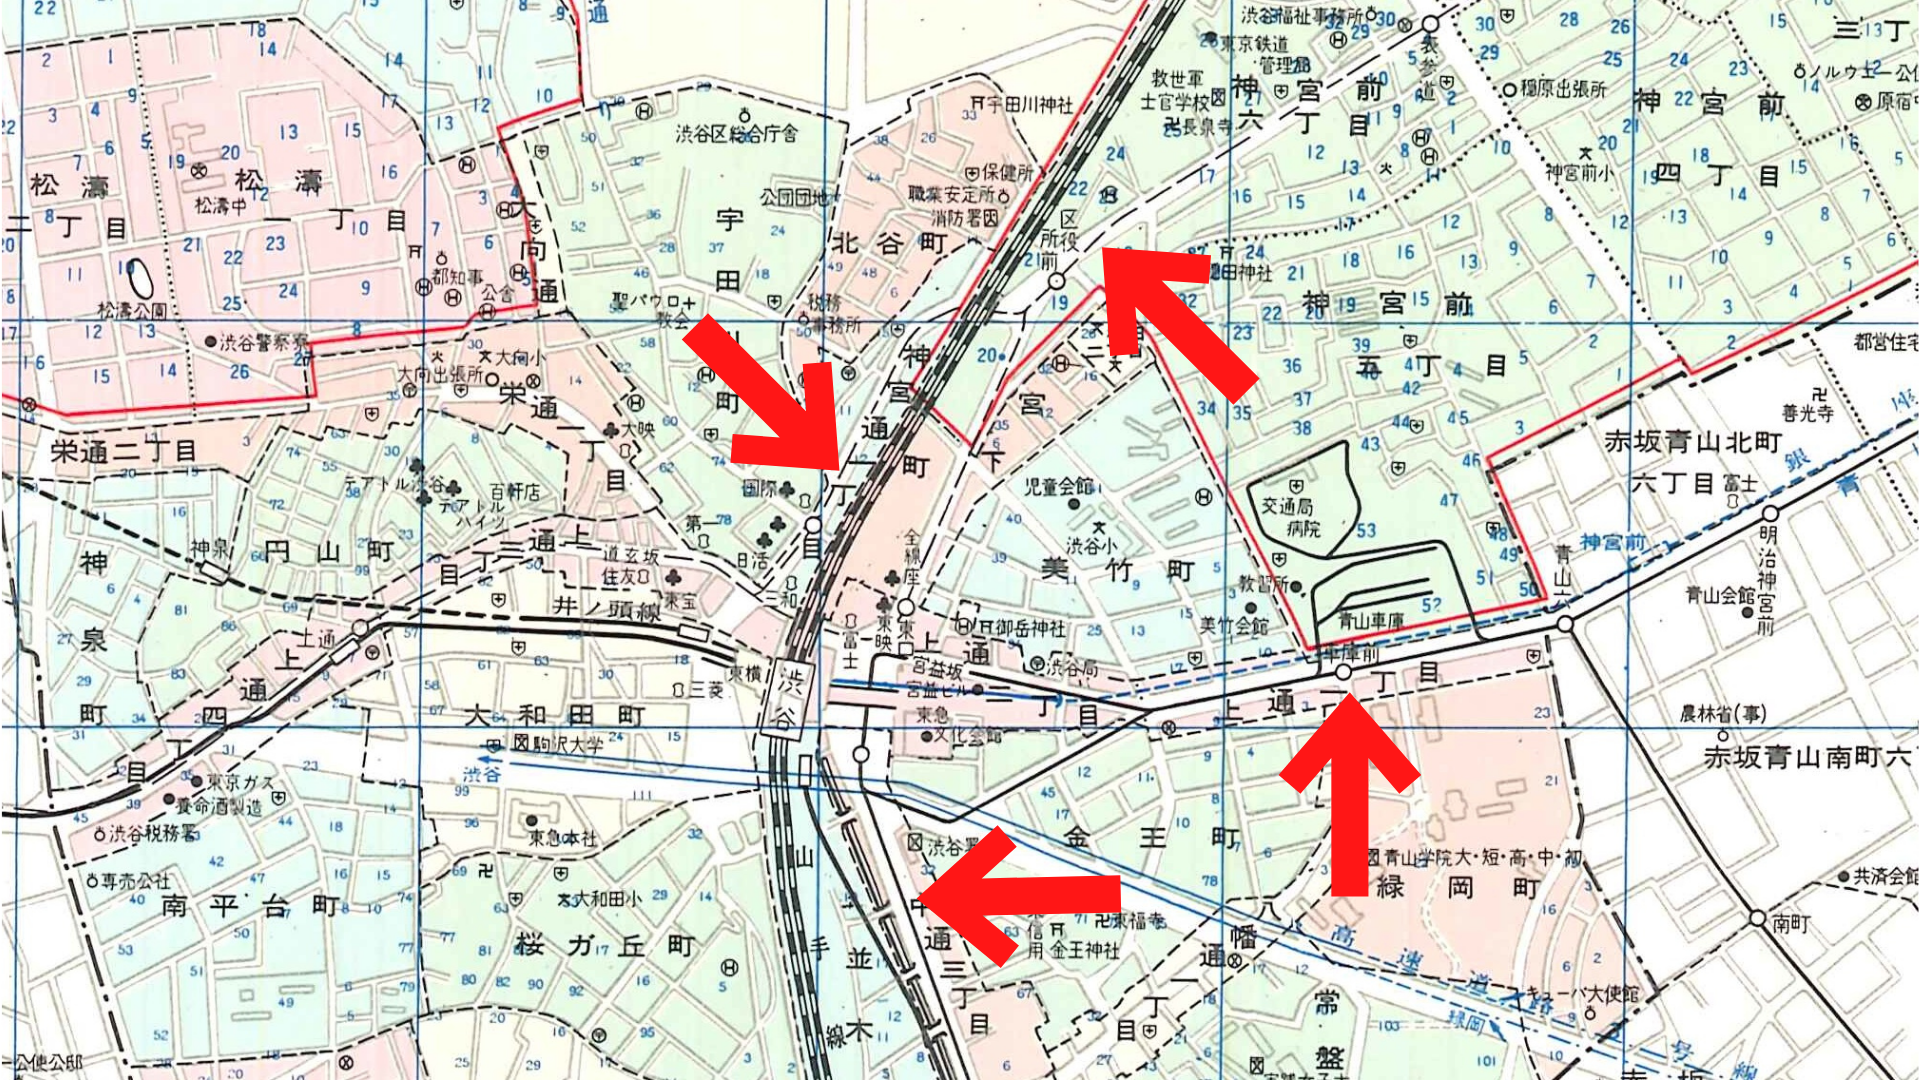 渋谷の街はどう変わった 古地図から見る街の移り変わり まっぷるトラベルガイド